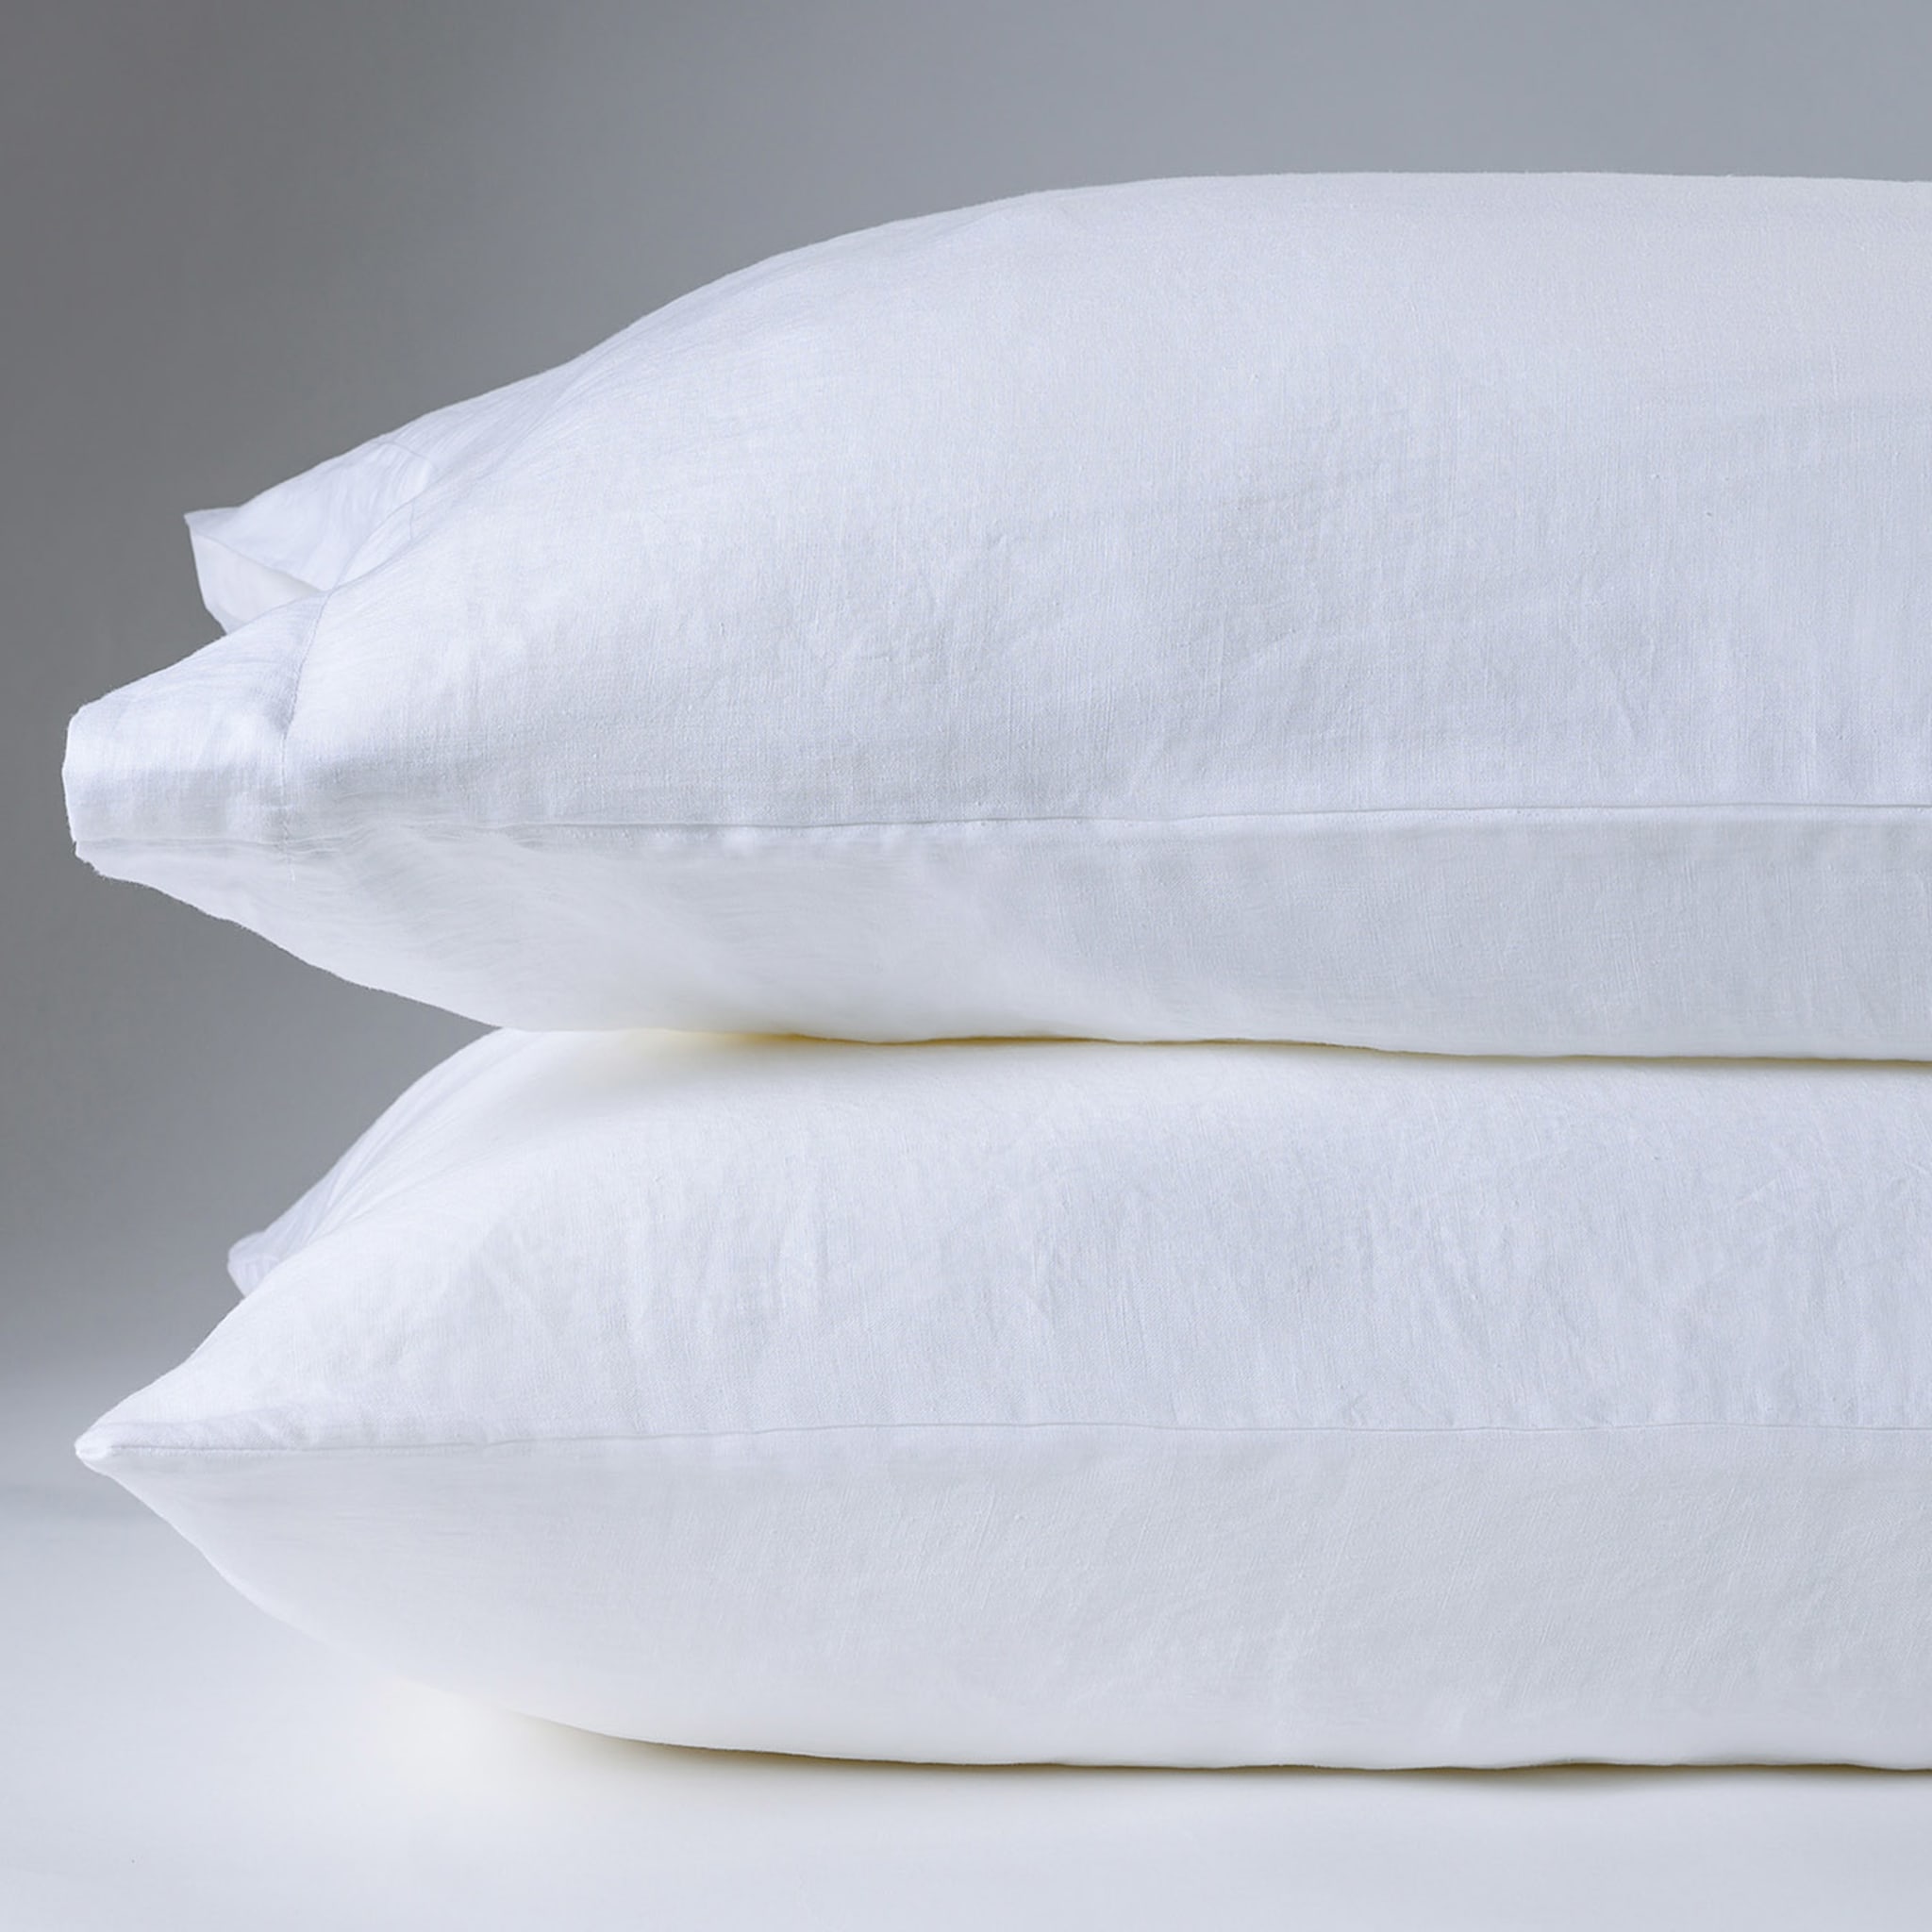 Kanapa White Set of 2 Pillowcases - Alternative view 2